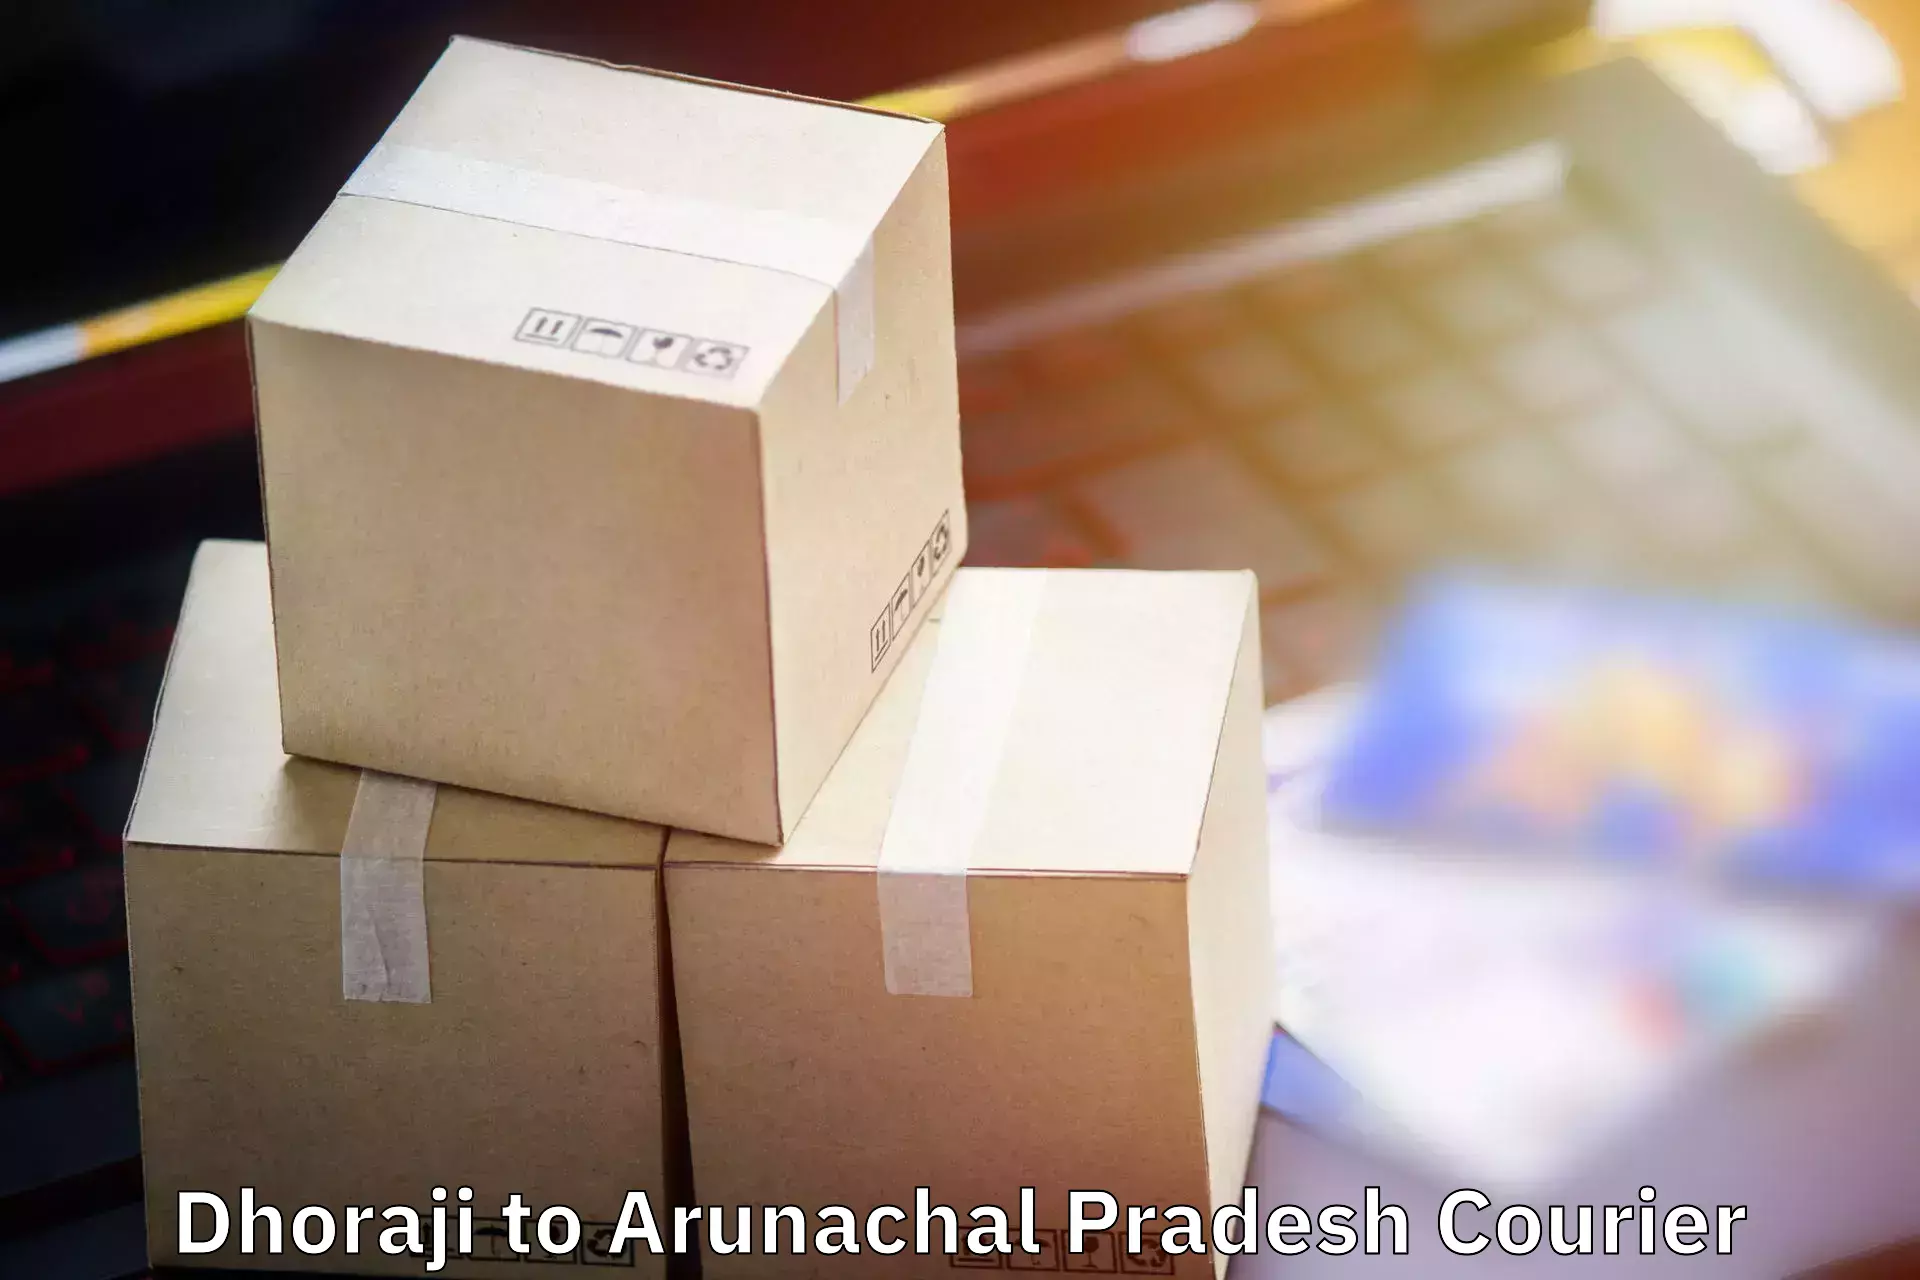 Baggage courier calculator Dhoraji to Arunachal Pradesh